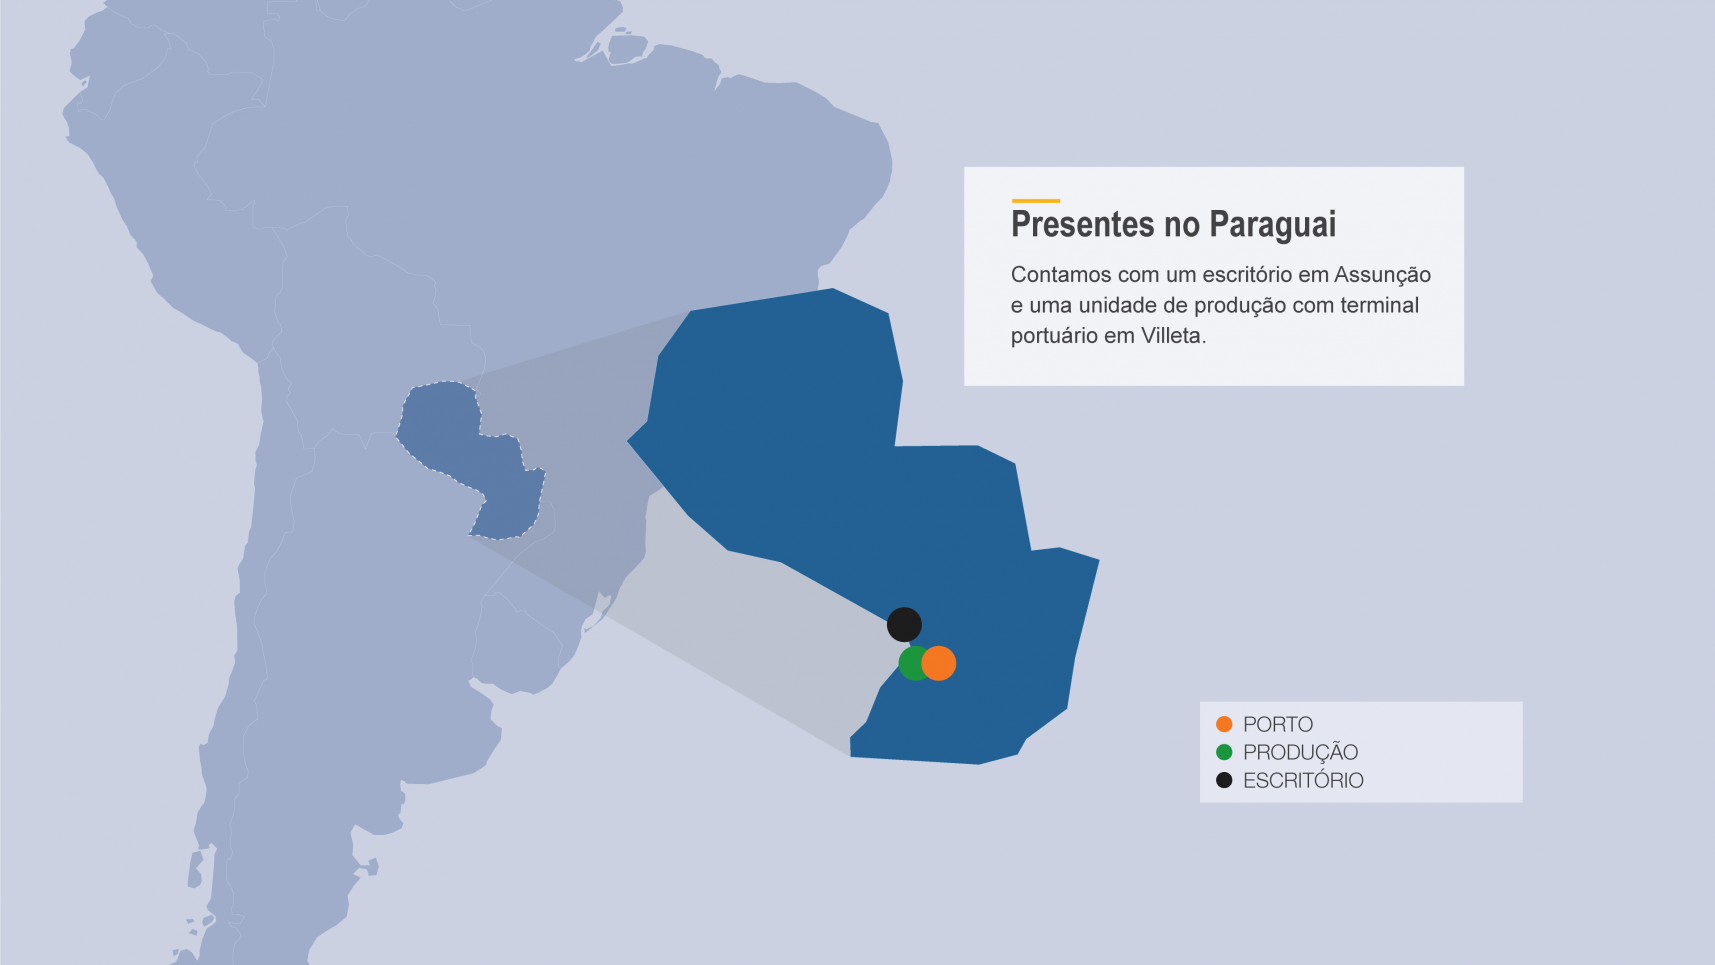 Presentes no Paraguai